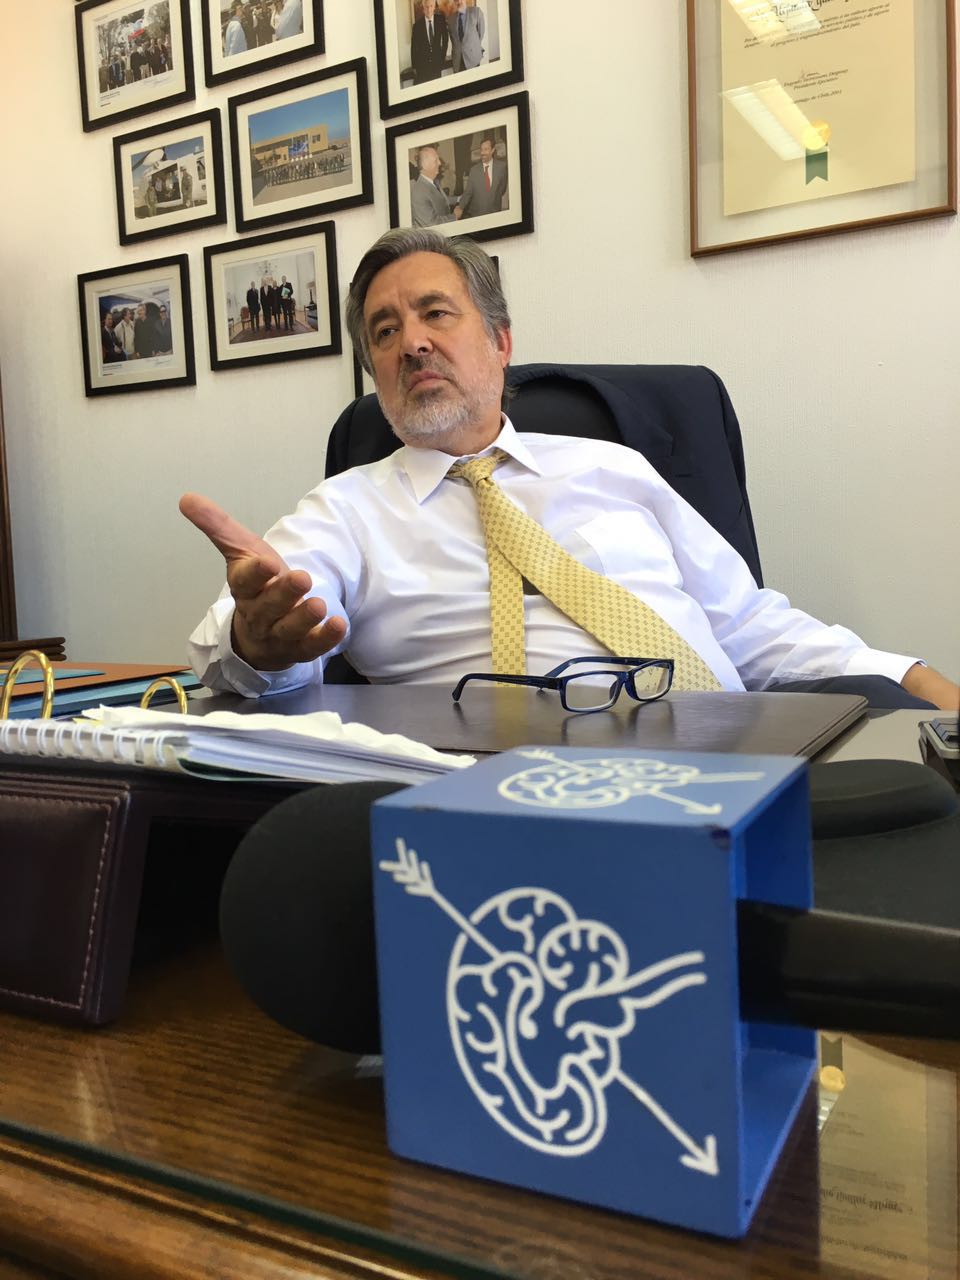 Senador (PR) Alejandro Guillier: “La rectificación del medio fue tibia”